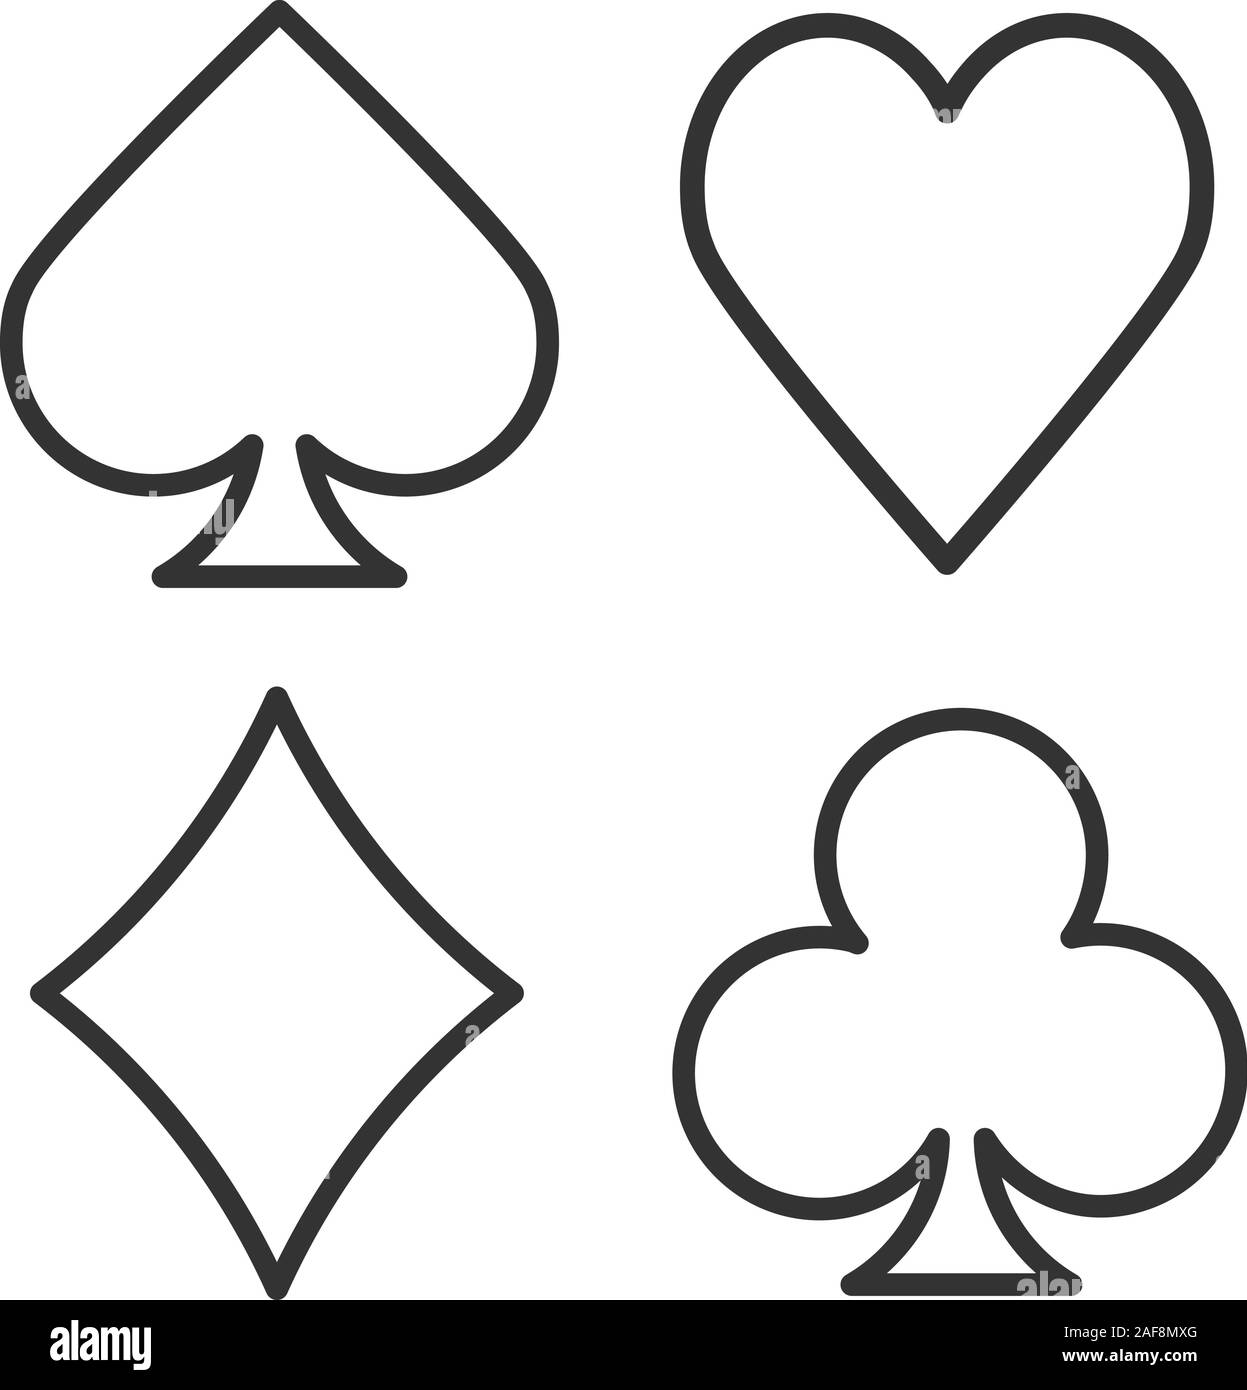 Printable Playing Card Symbols Diamond